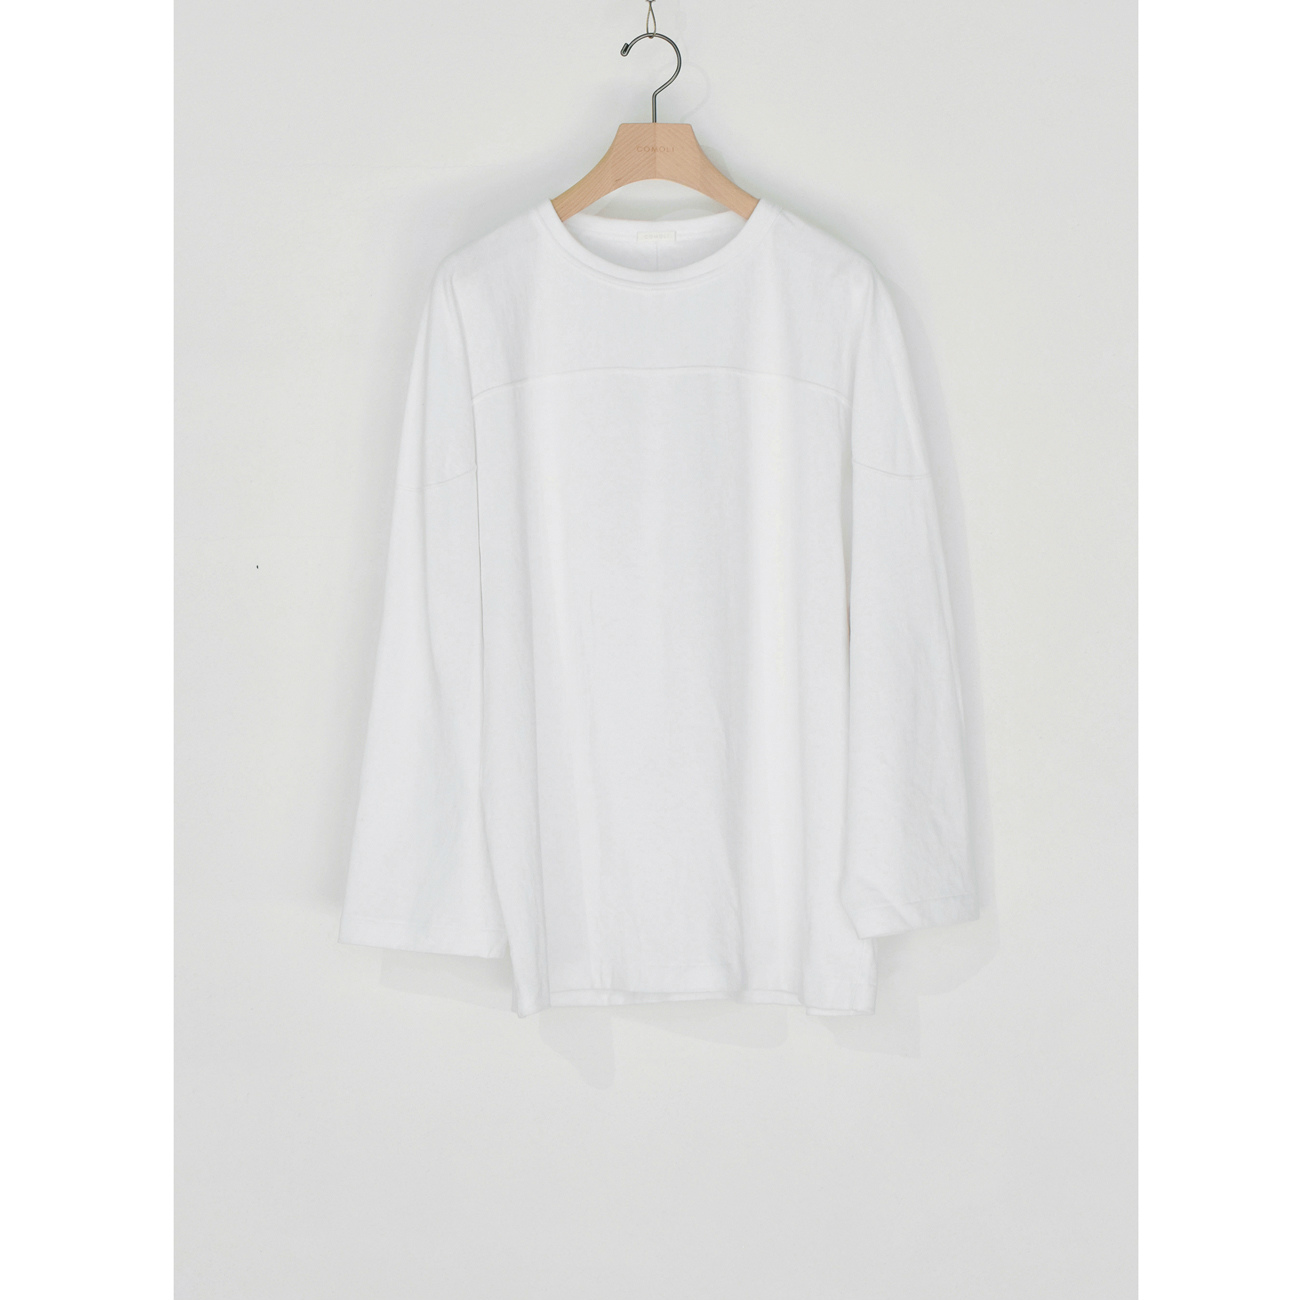 COMOLI フットボールTシャツ WHITE サイズ3 - ウォームアップウェア